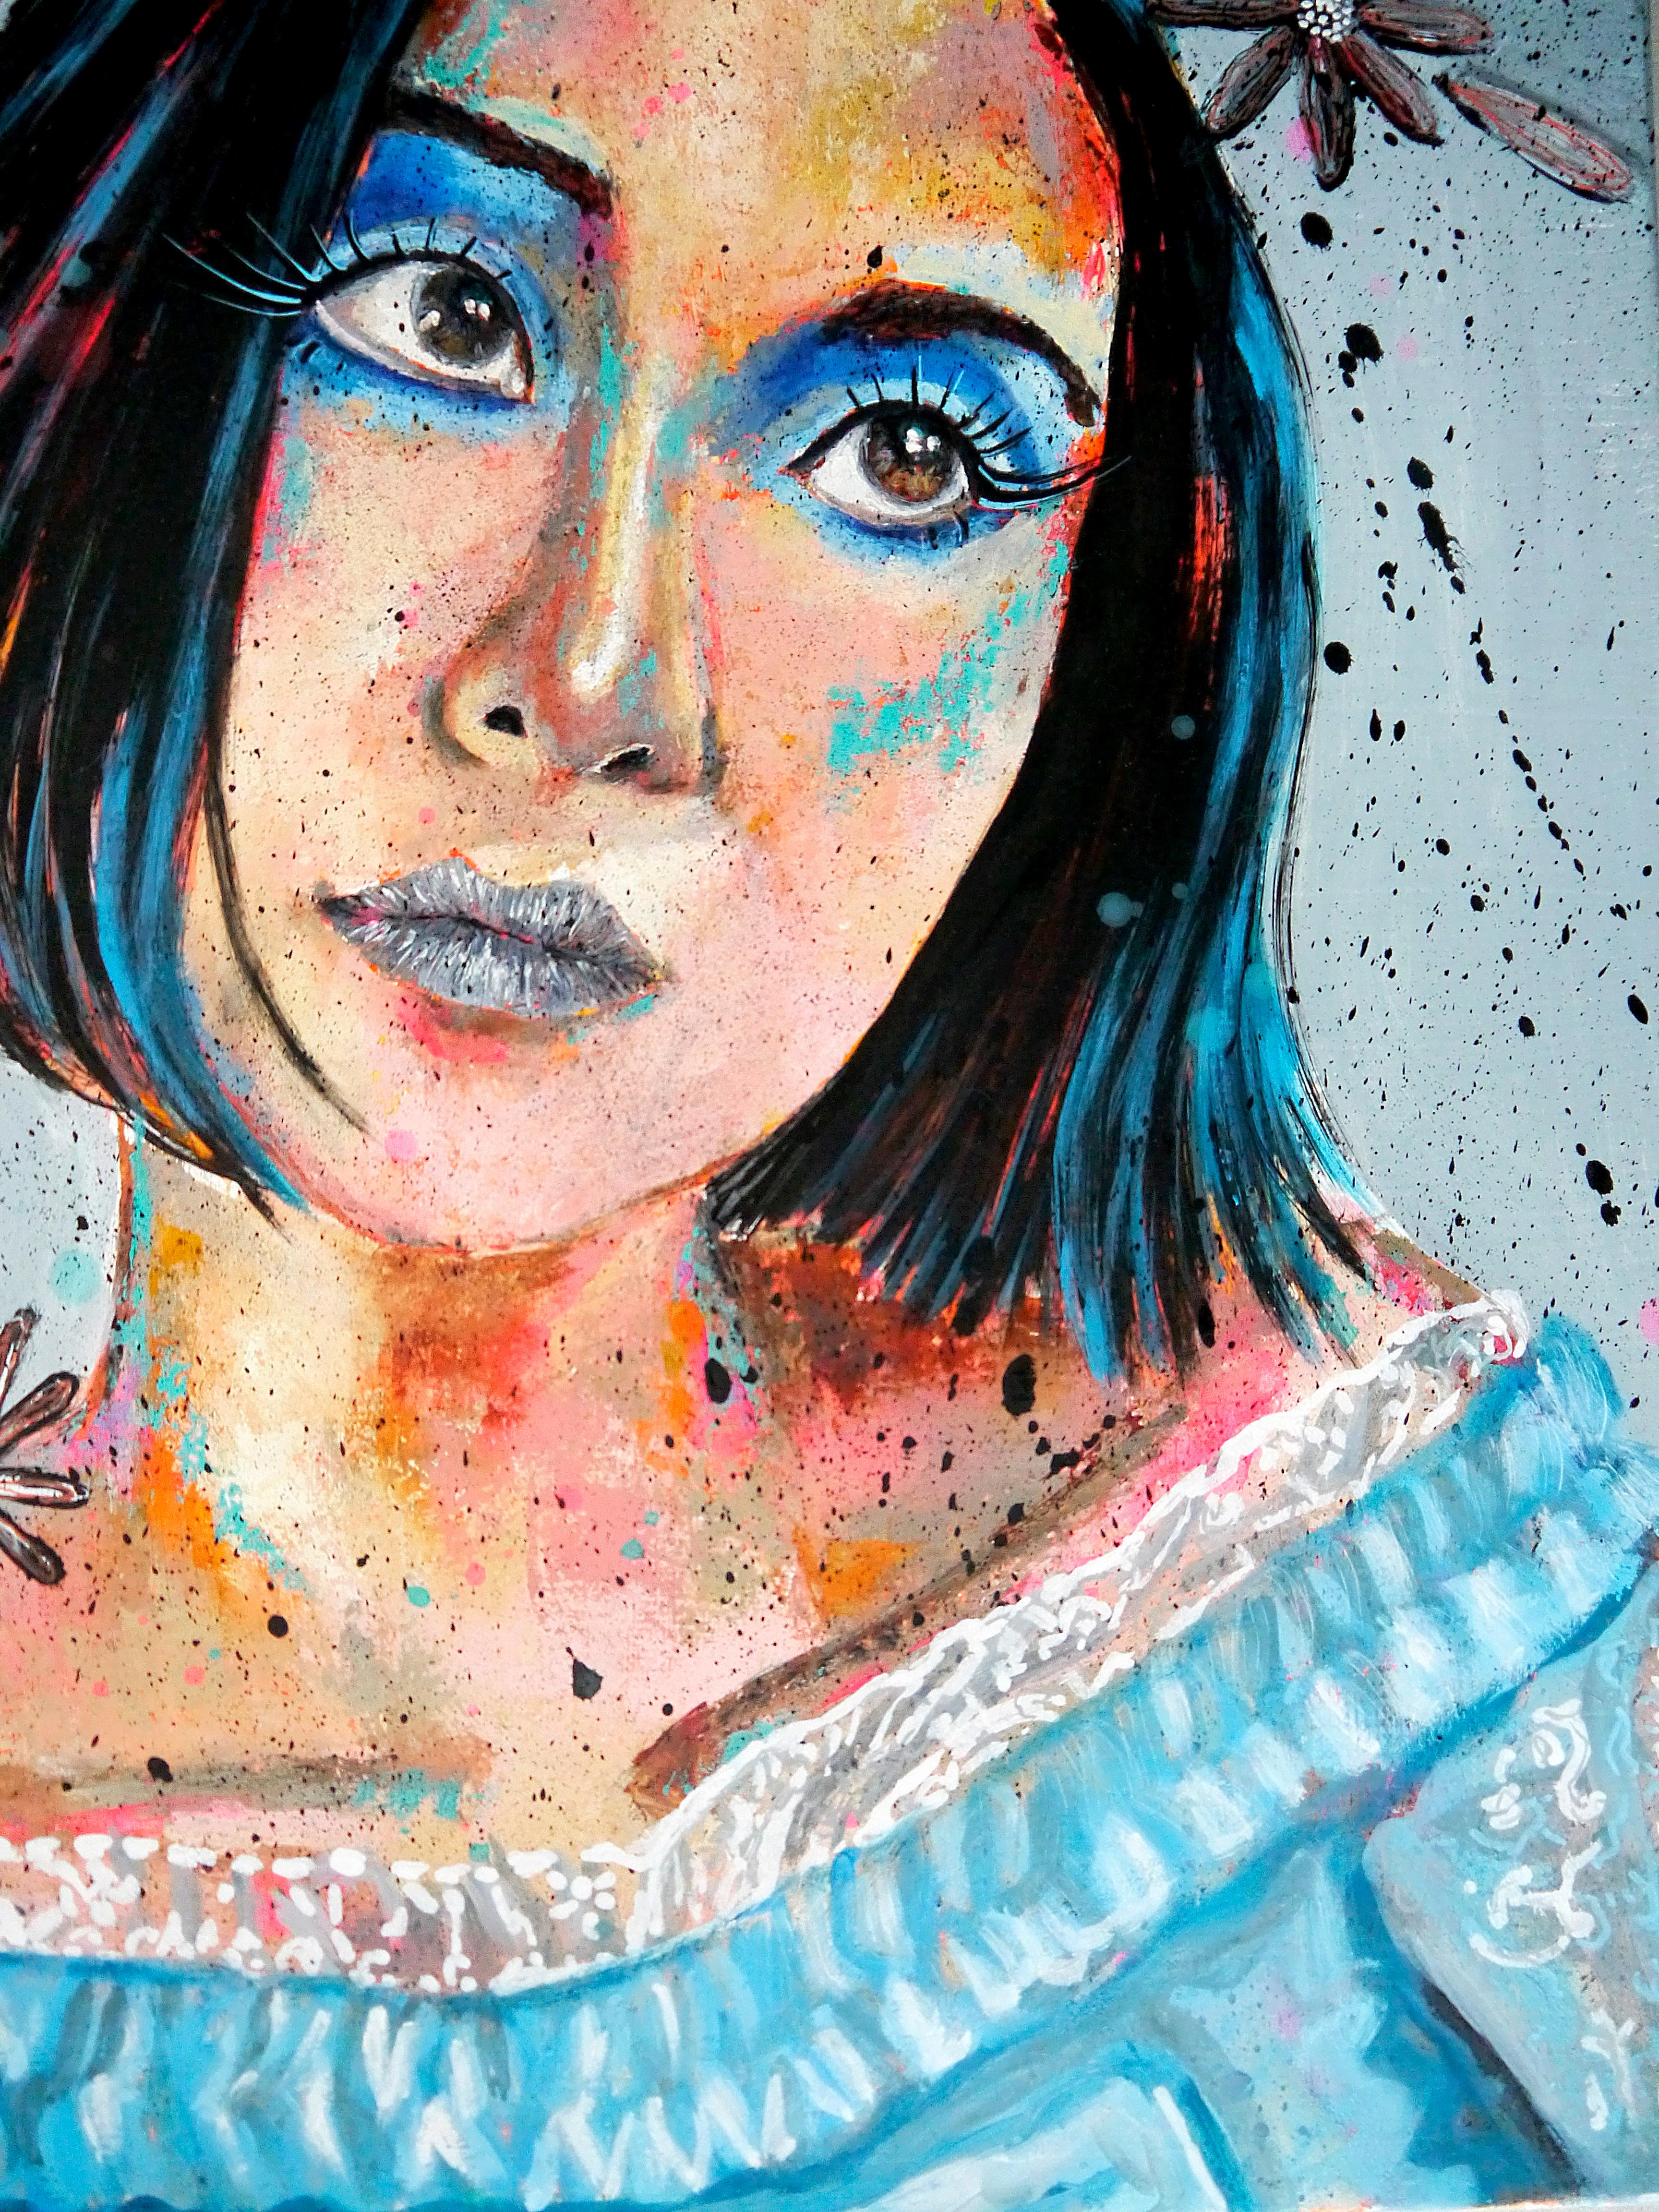 Portrait PS 127 Blue Soey

Portrait de l'artiste Soey Milk portant une robe bleue
Technique : huile, acrylique et encre sur toile 61 x 46cm (24x18,1 inch)

》》R E A D Y -- T O -- H A N G《《

❶ → Œuvre originale signée. Certificat d'authenticité